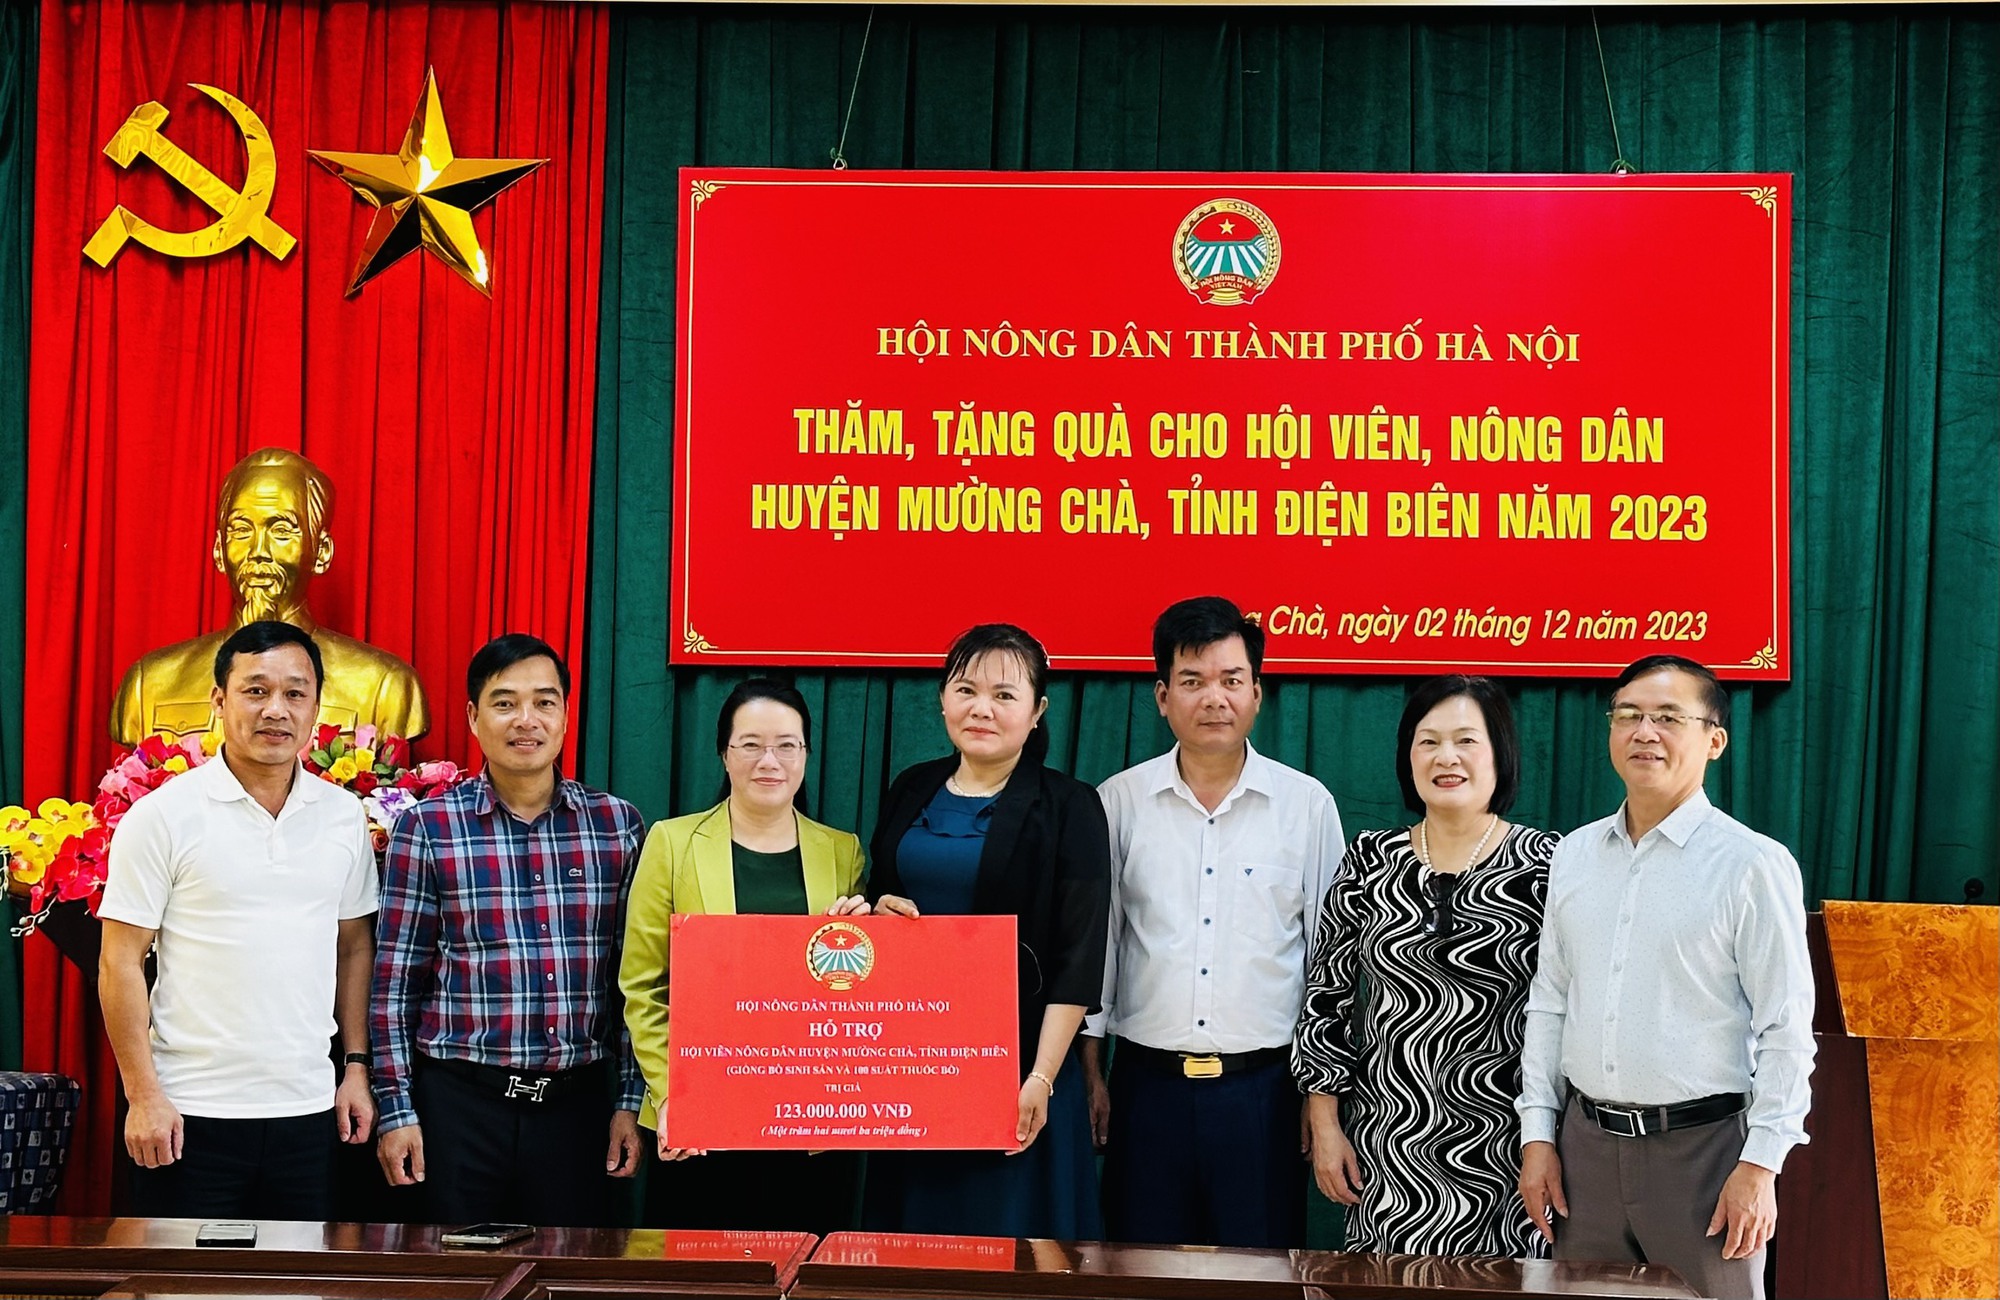 Hội Nông dân TP Hà Nội tổ chức đoàn cán bộ đi học tập, trao đổi kinh nghiệm tại Điện Biên, Lai Châu - Ảnh 5.